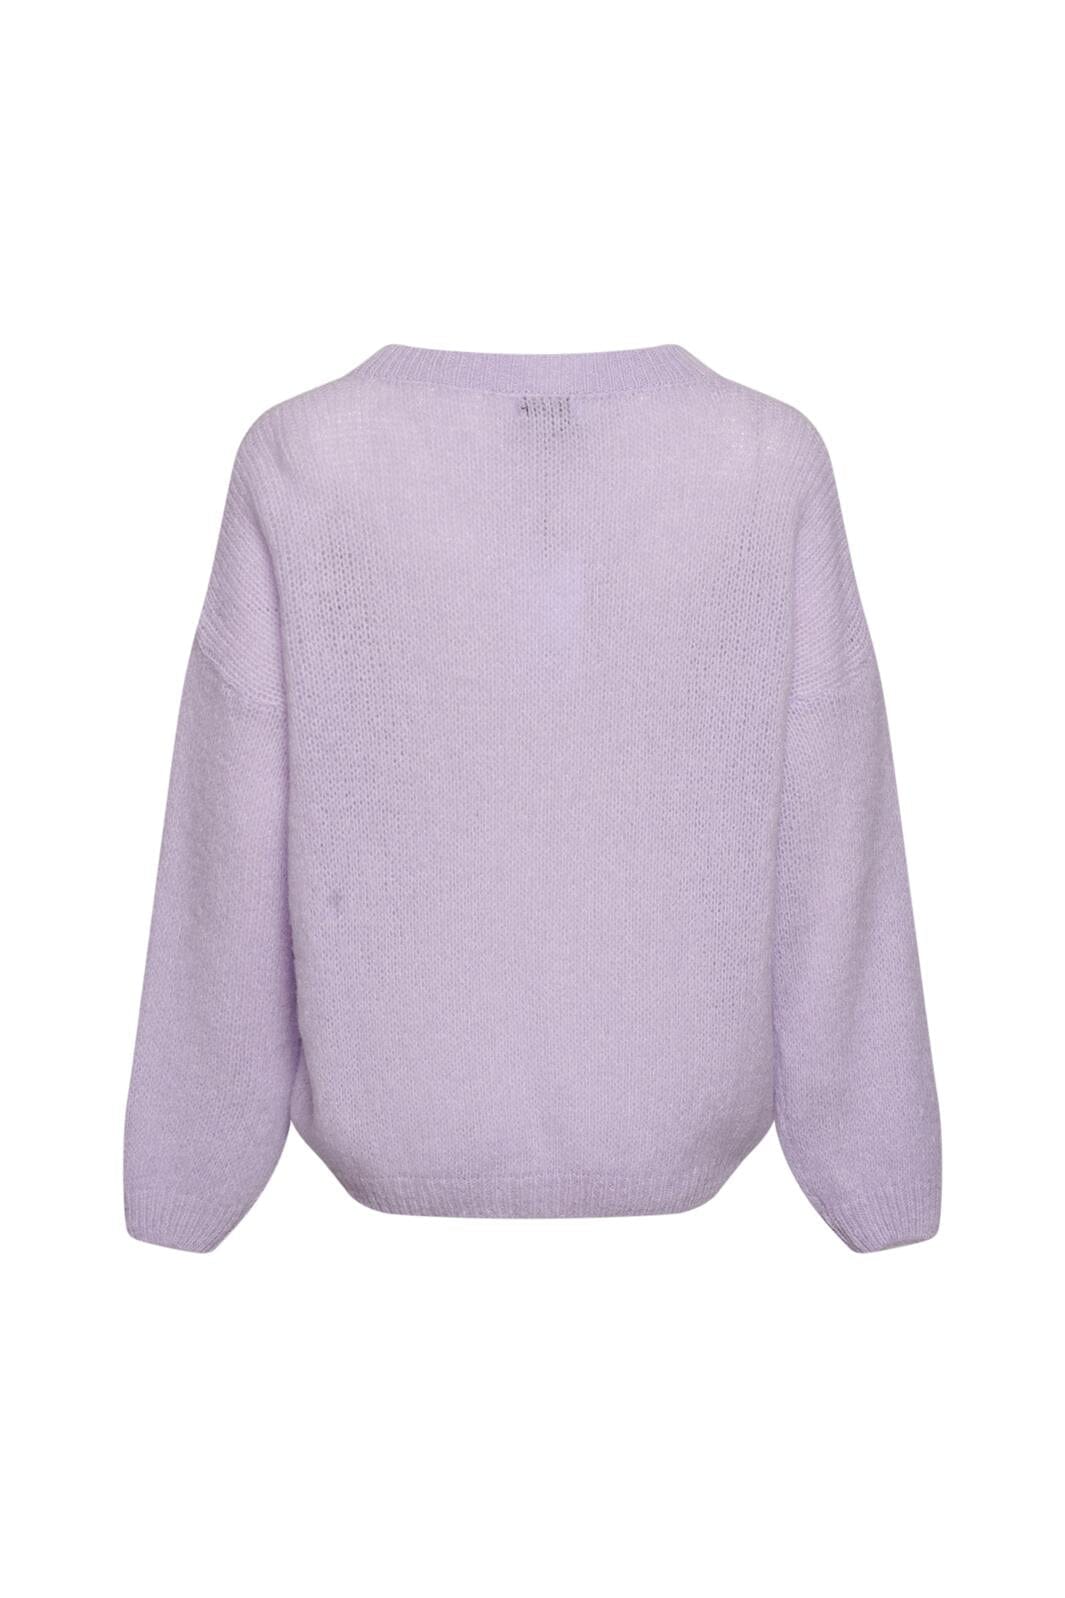 Noella - Renn Knit Sweater - 237 Lavender